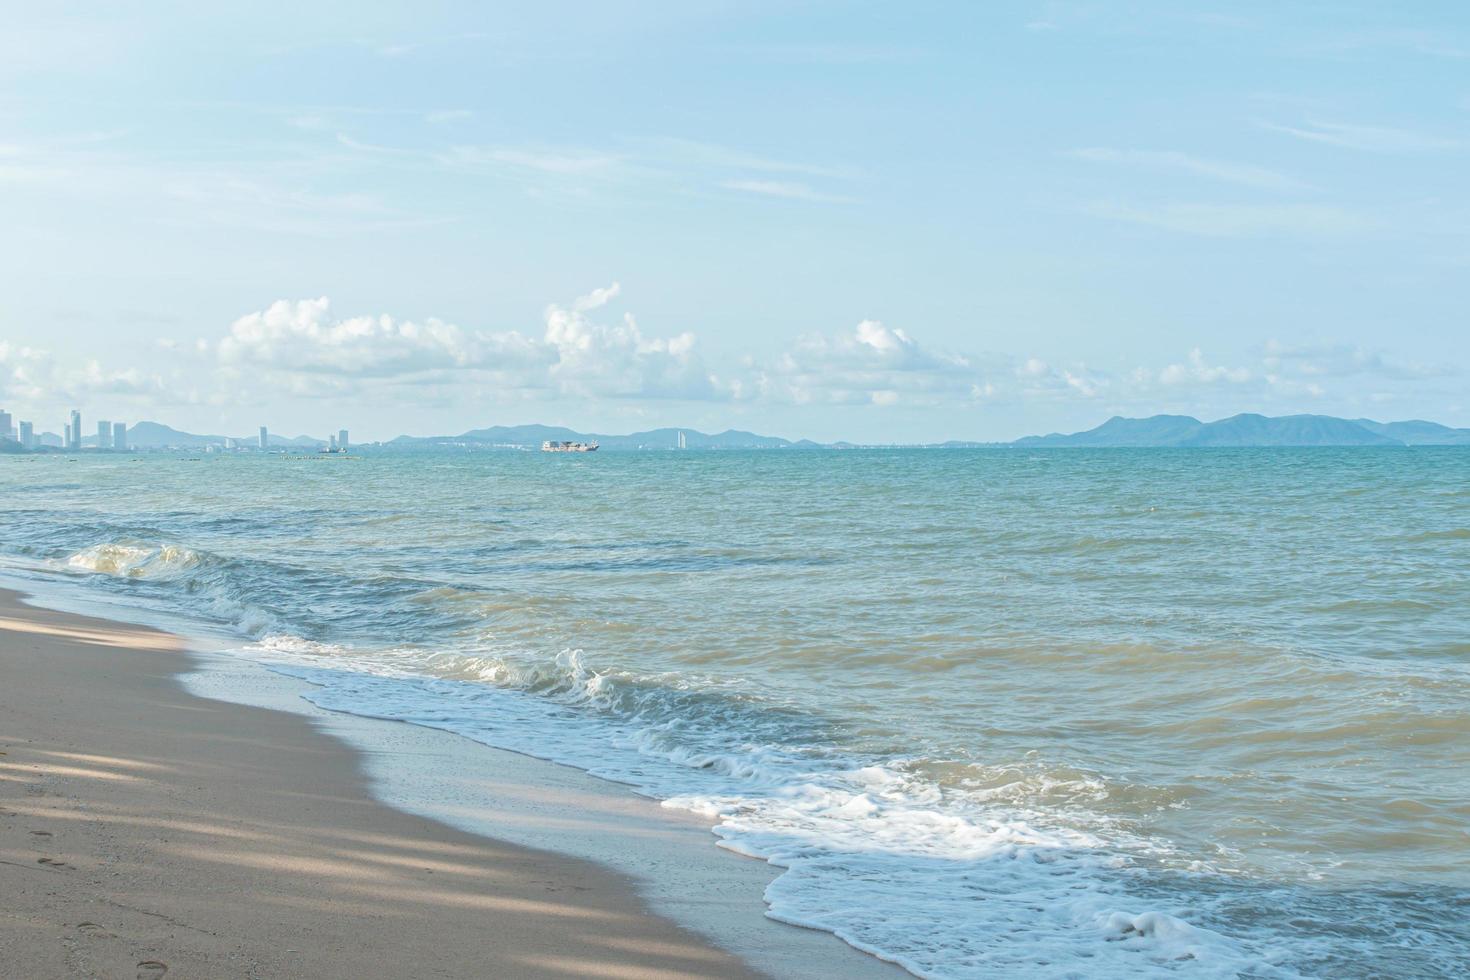 la plage de pattaya, la thaïlande accueille les touristes. photo